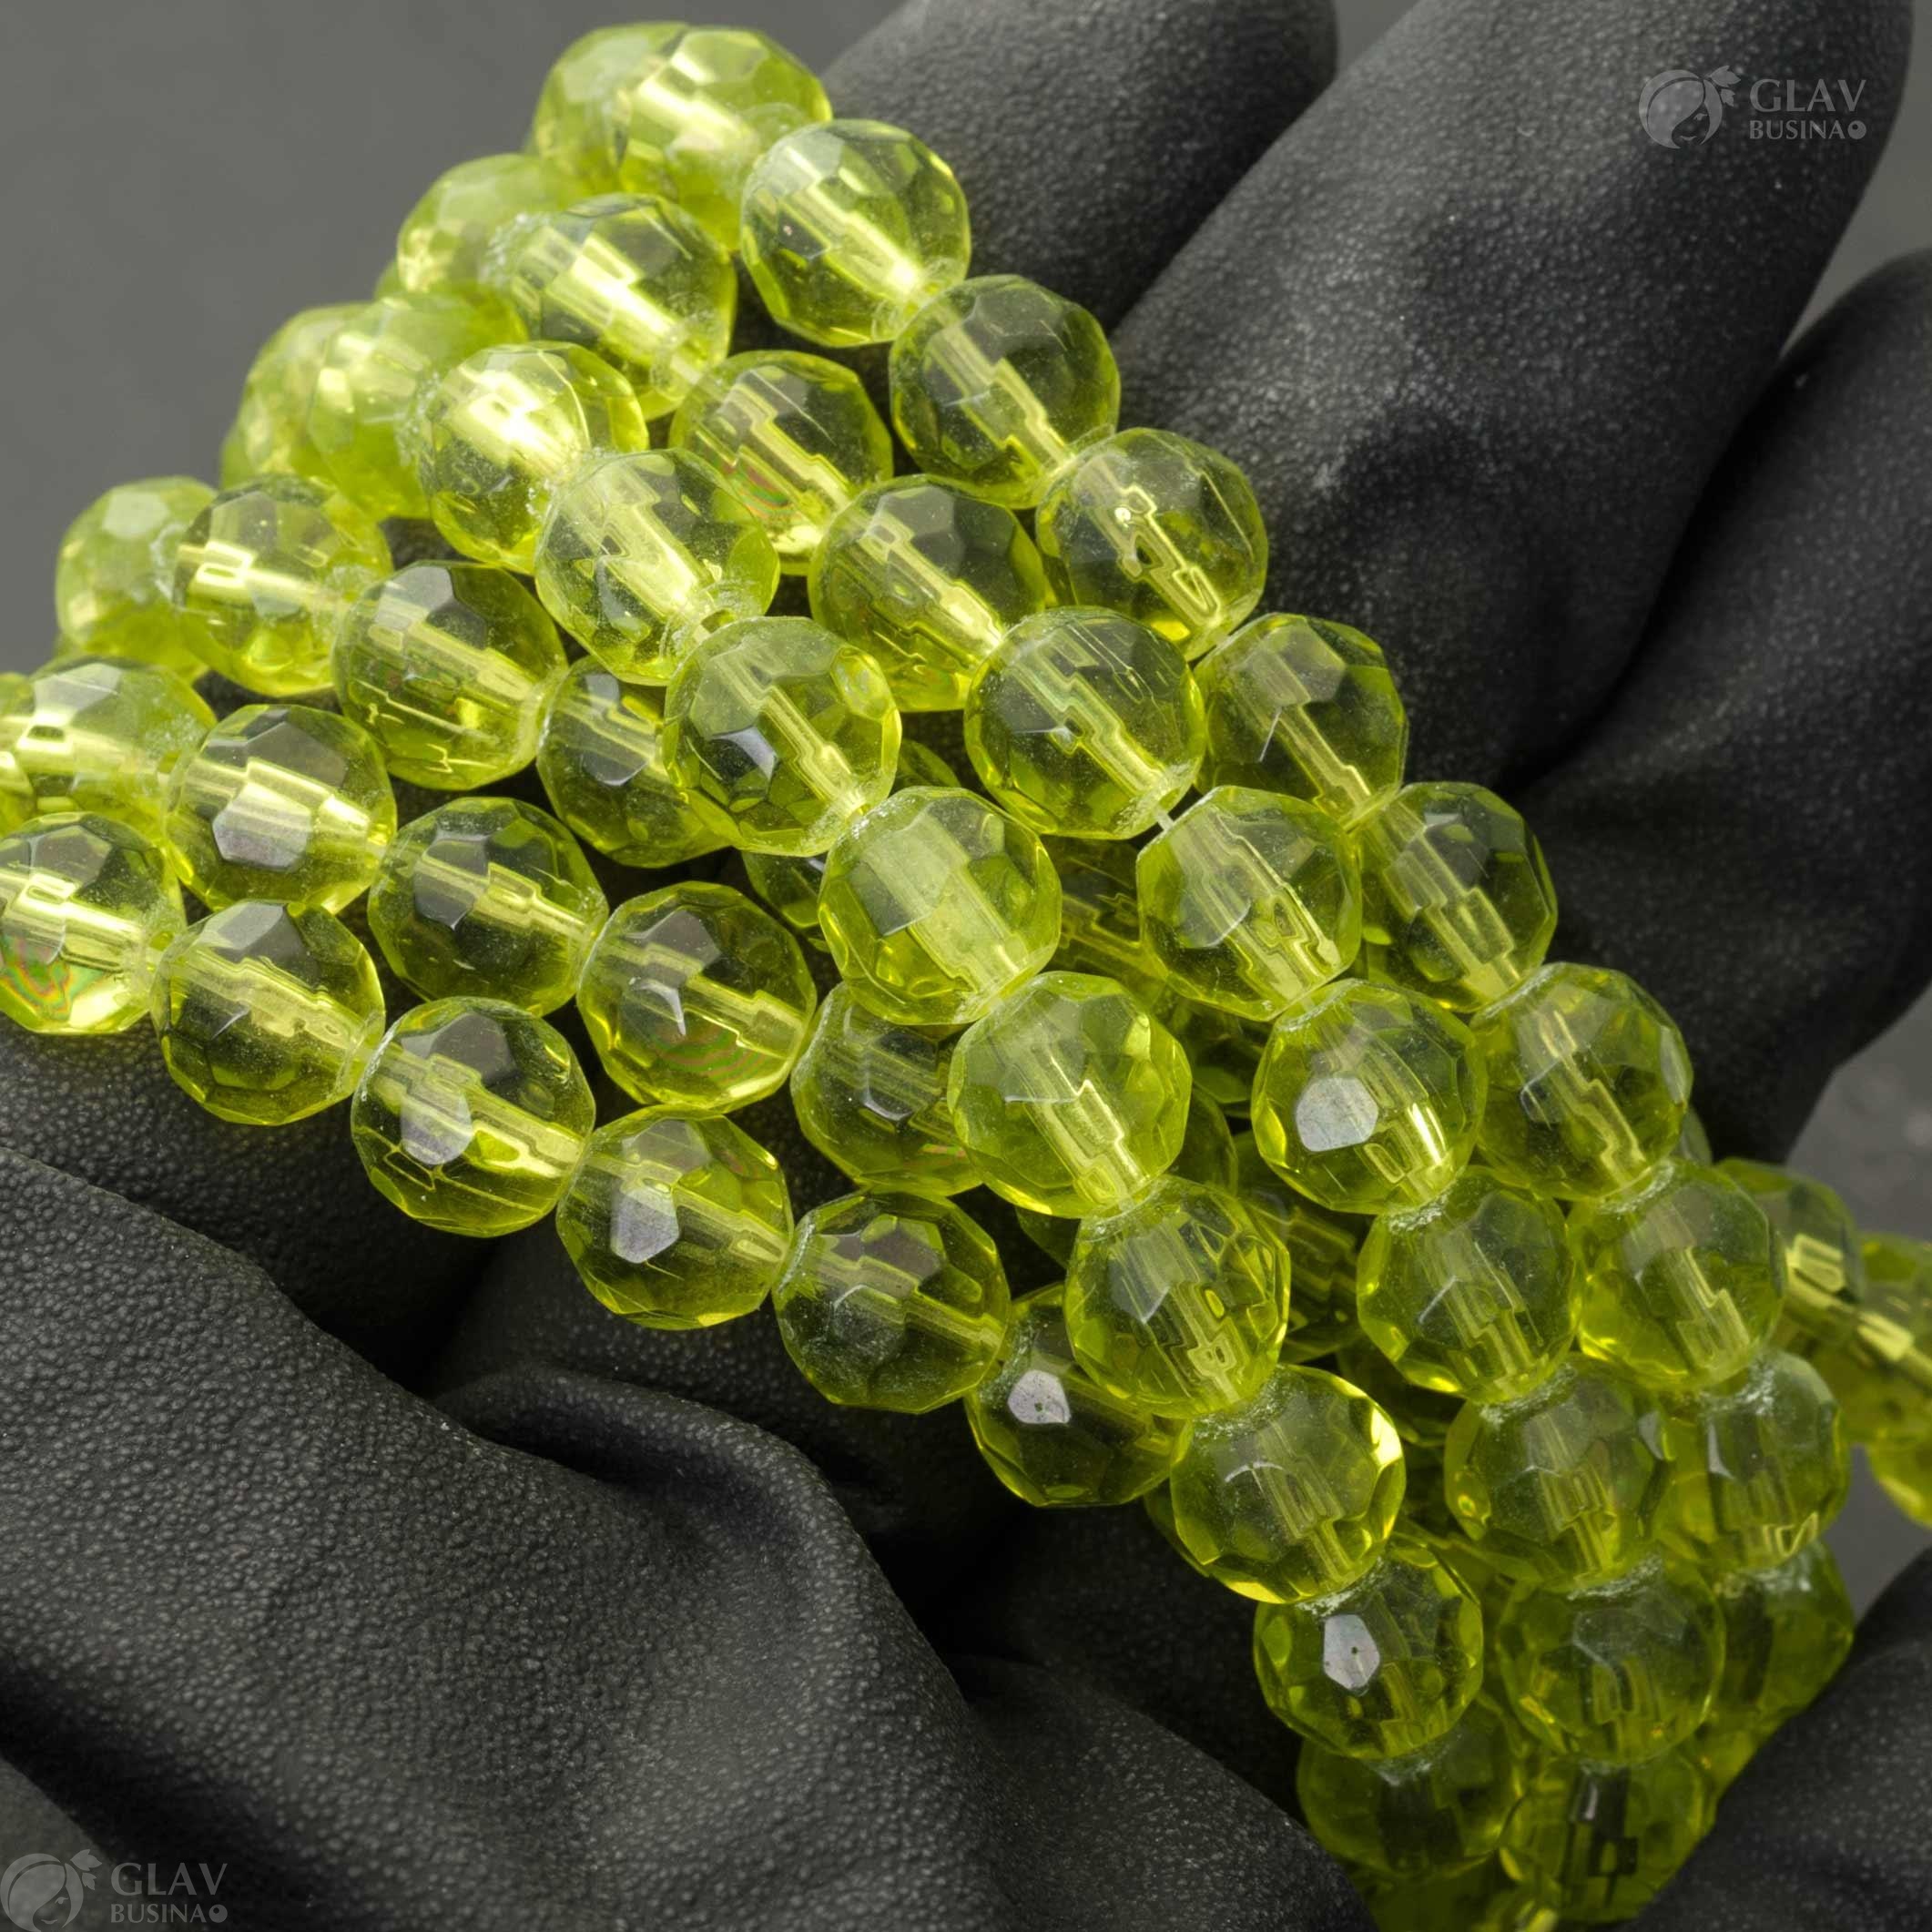 Бусины-шарики из зеленого стекла гранёные, диам. 8мм, отв-е 1мм: качественные зеленые стеклянные бусины-шарики с гранеными поверхностями и диаметром 8мм, отверстие 1мм.